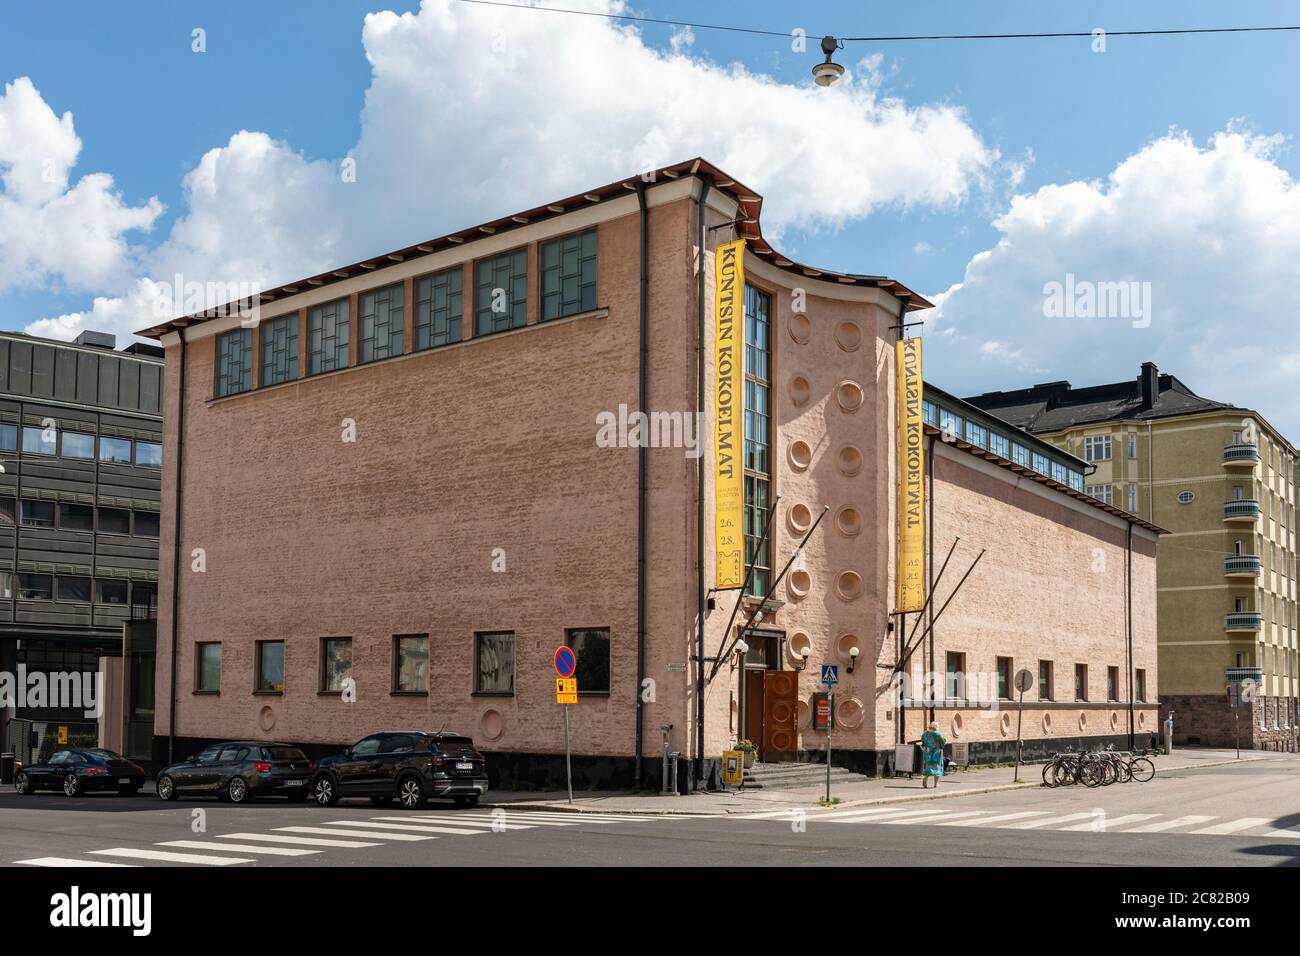 Helsingin Taidehalli, una kunsthalle che rappresenta lo stile architettonico del classicismo nordico, nel distretto di Töölö a Helsinki, Finlandia Foto Stock